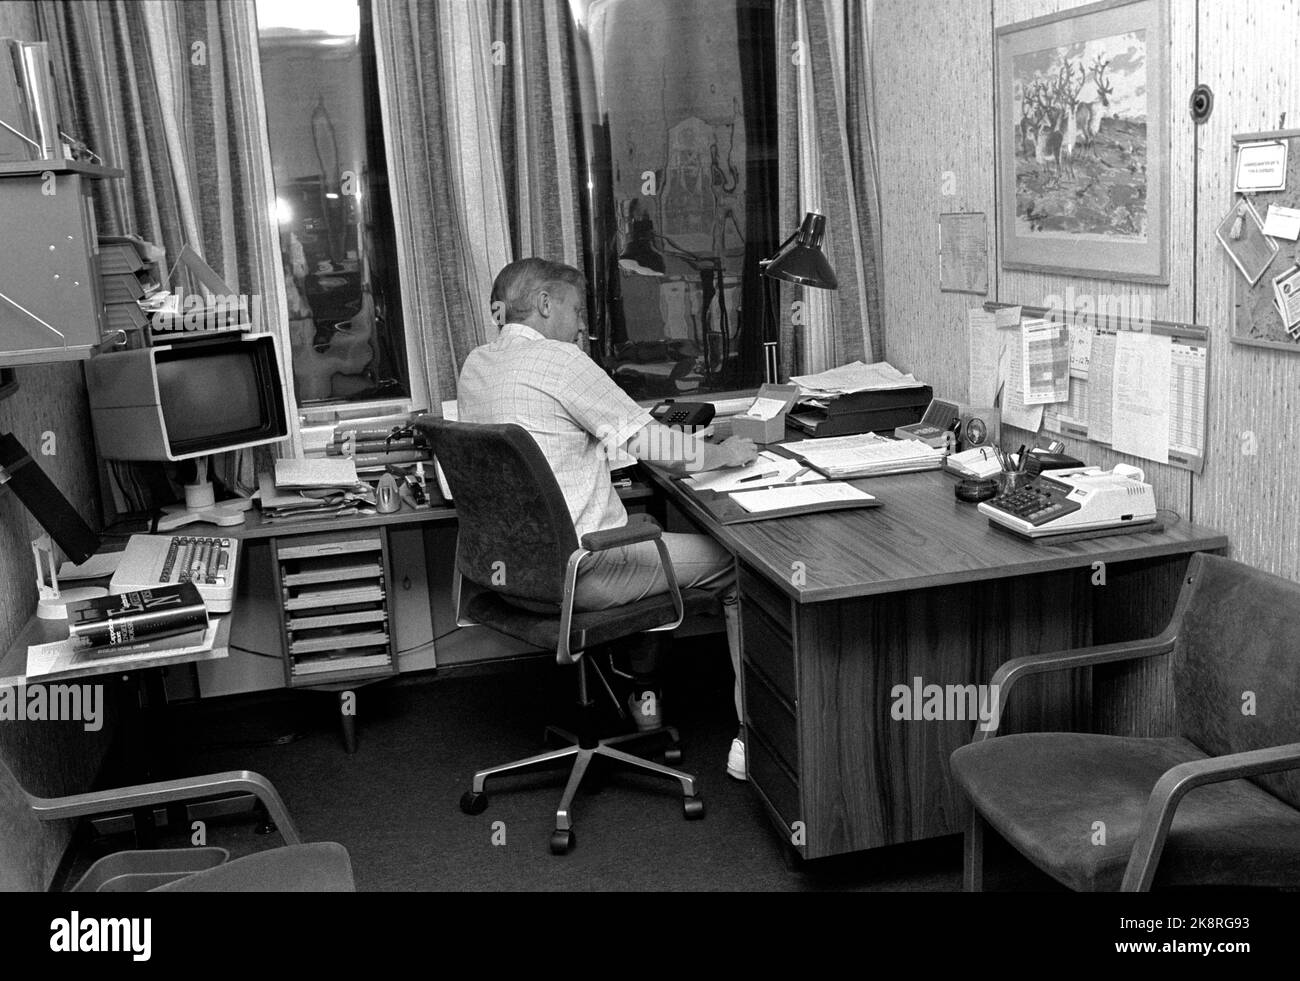 Oslo 19850828 che tipo di status dovrebbe avere questo uomo? Il suo ufficio è piccolo e ha solo due finestre, ma ha braccioli imbottiti sulla sedia, e un piccolo computer / terminale dati. La scrivania è di buone dimensioni ... Immagine dell'articolo NTB sullo stato dell'ufficio. Foto: NTB / NTB Foto Stock